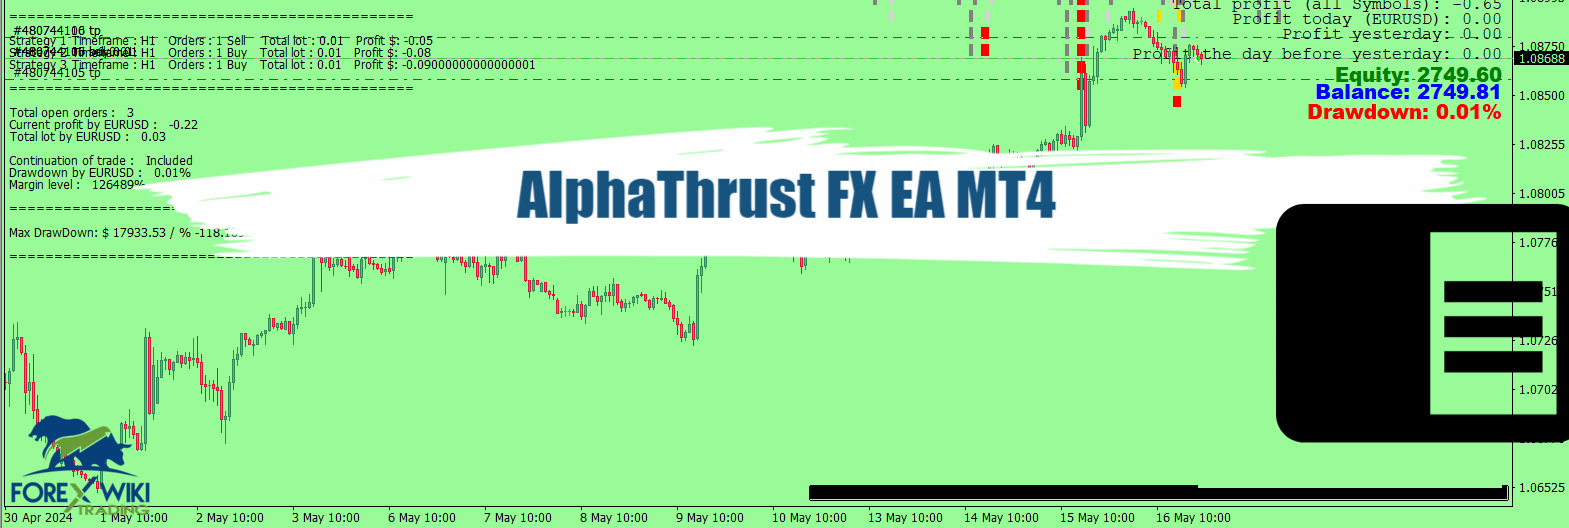 AlphaThrust FX EA MT4 - Free Download 28